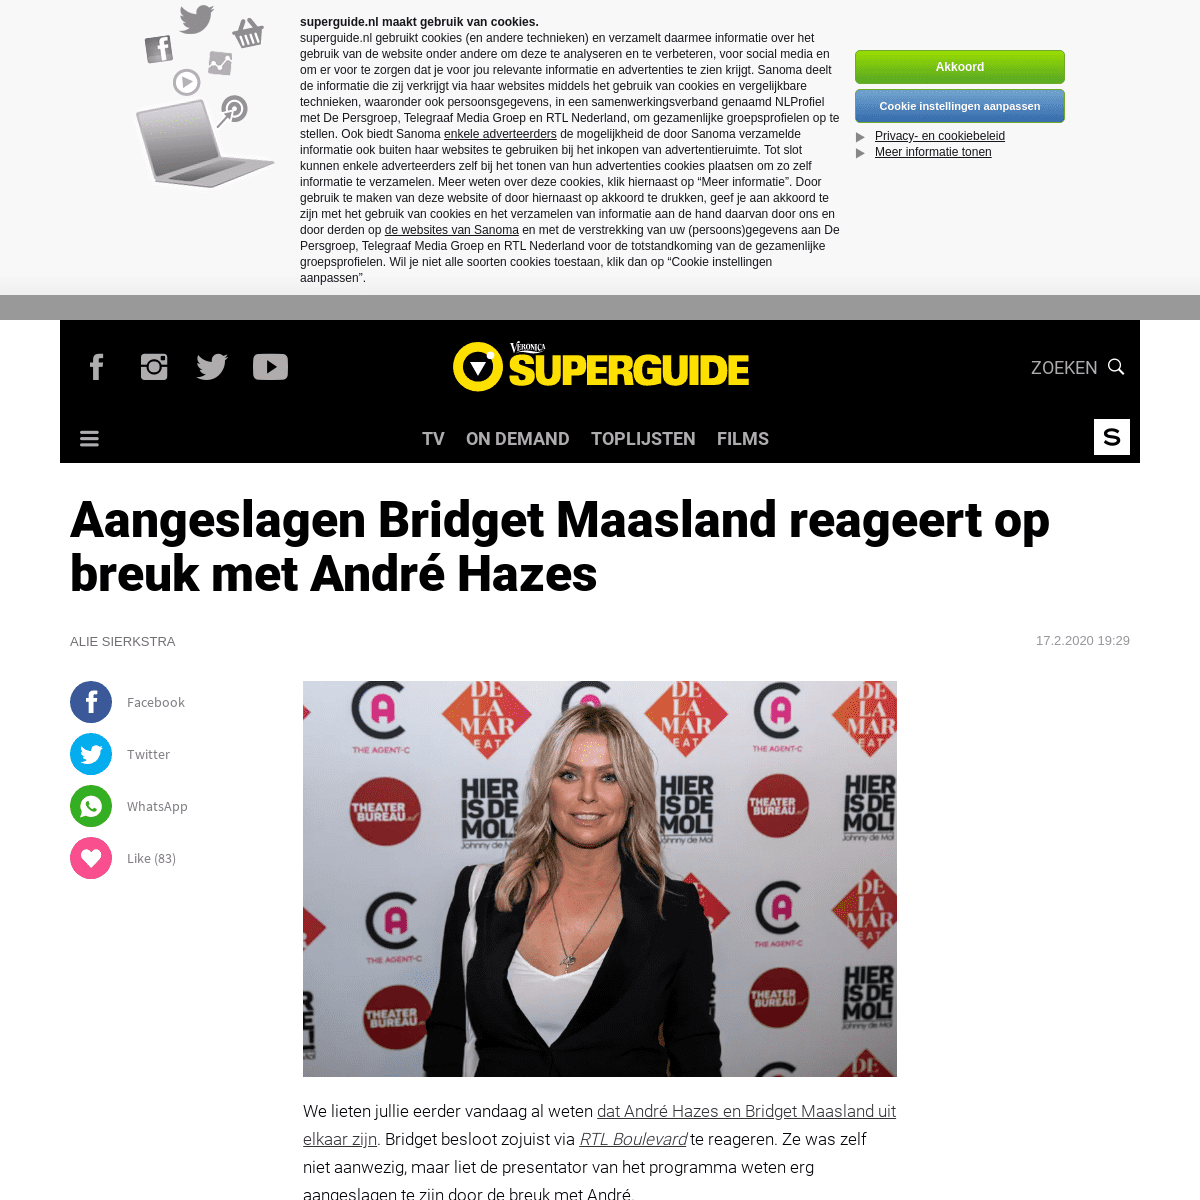 A complete backup of www.superguide.nl/nieuws/aangeslagen-bridget-maasland-reageert-op-breuk-met-andre-hazes-tv